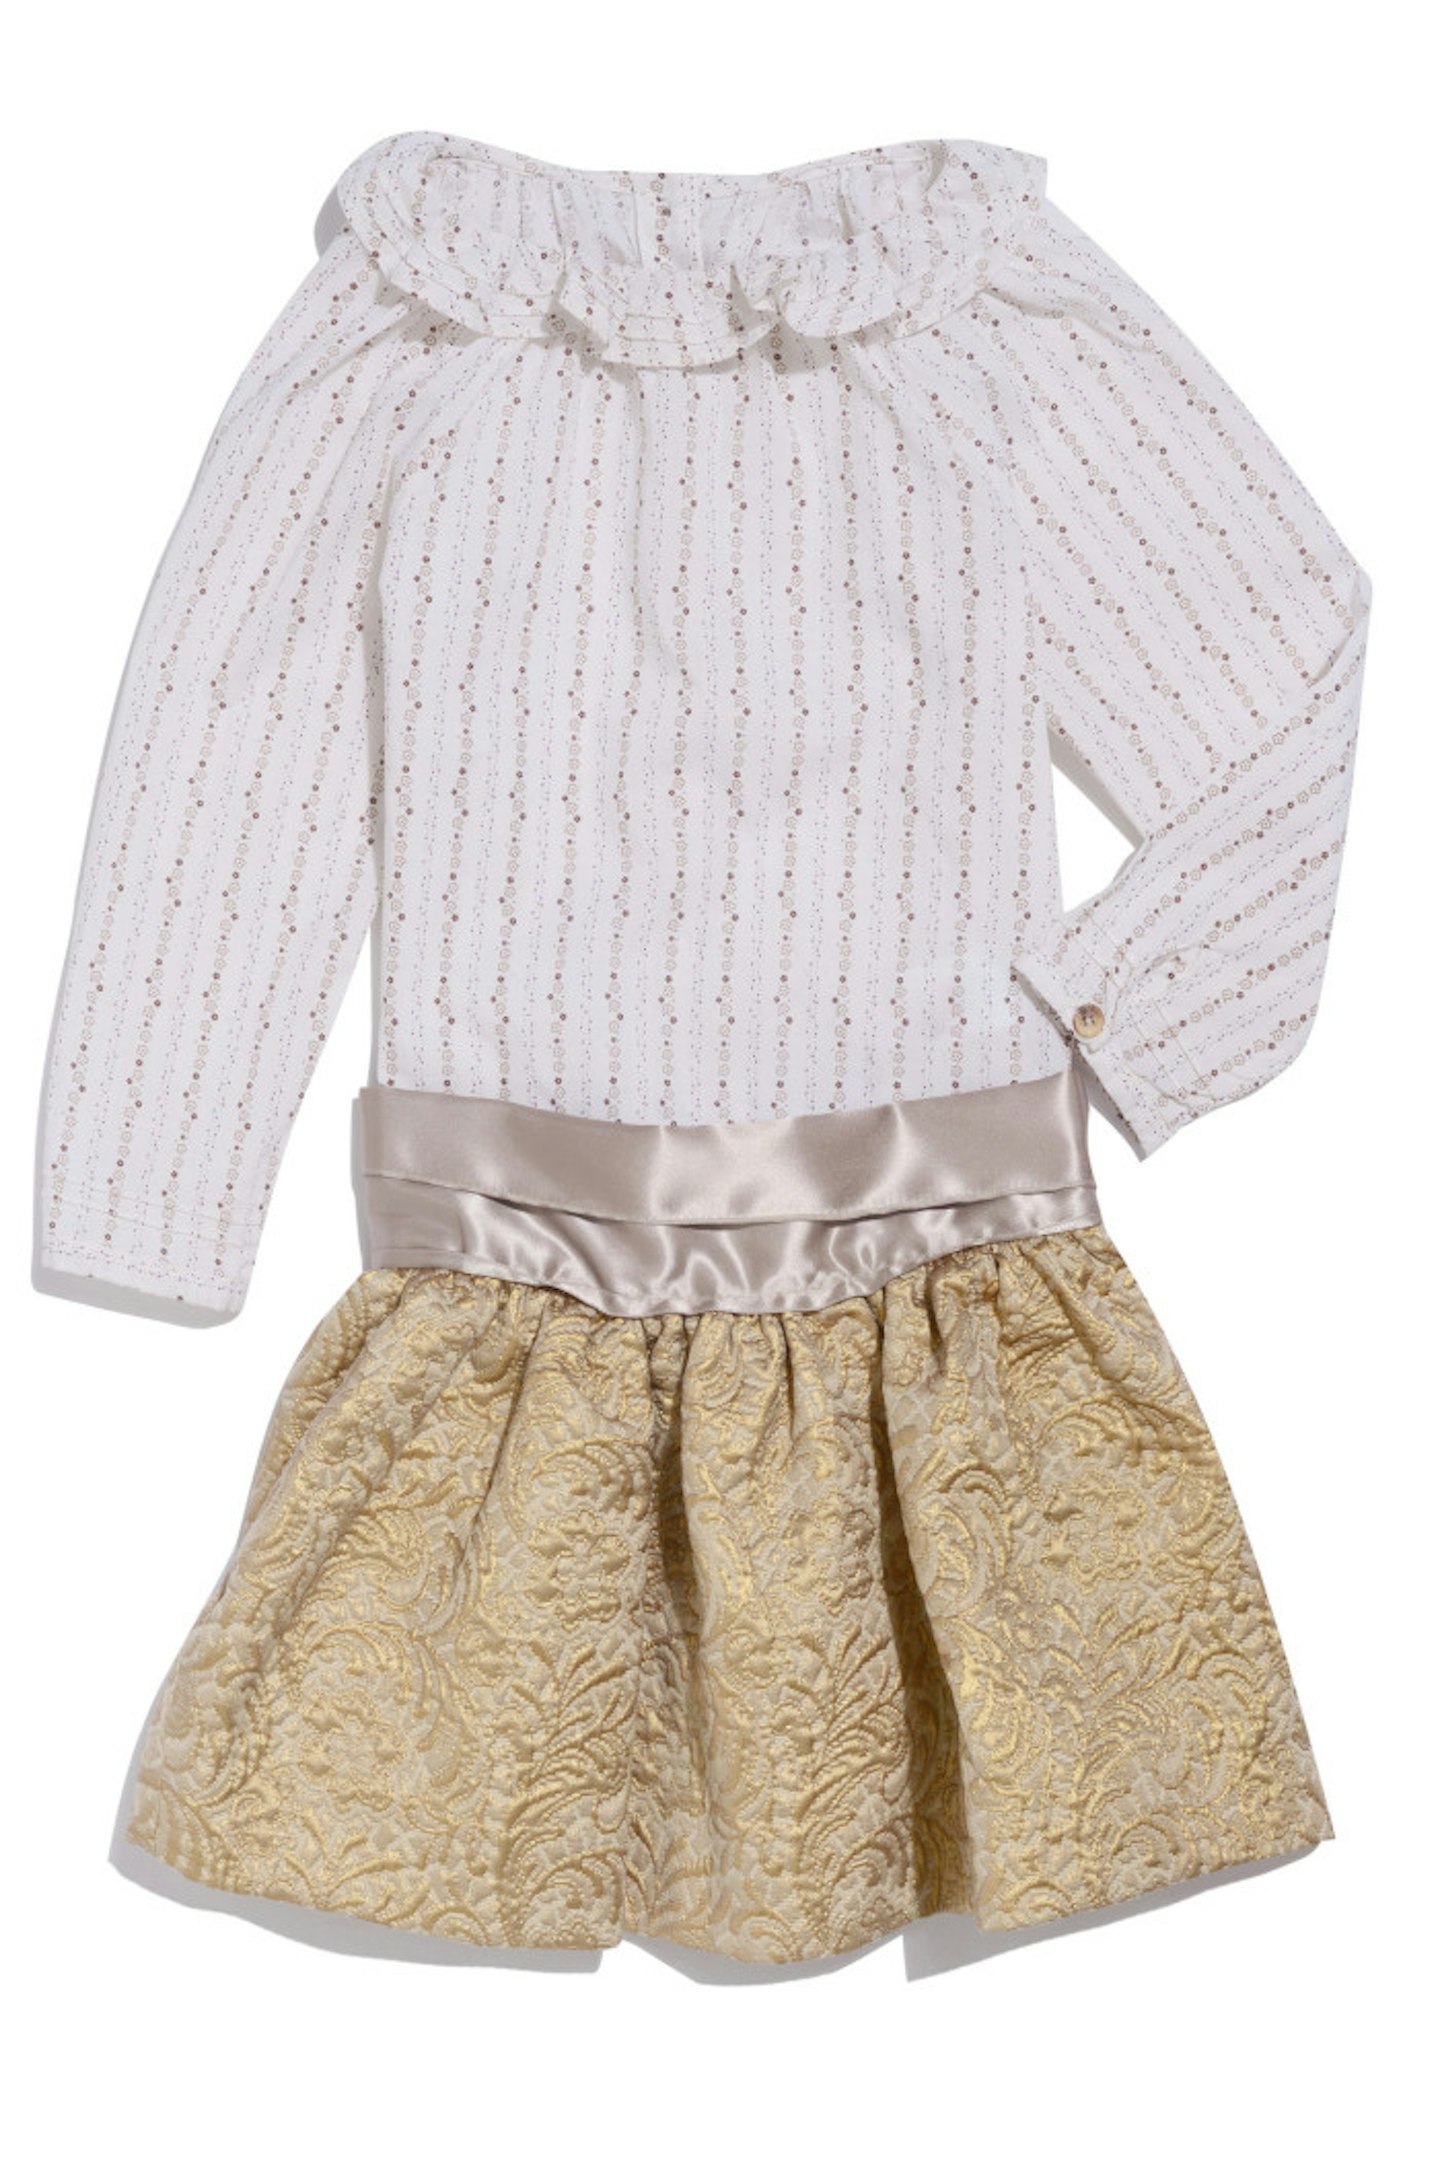 Marie Chantal gold skirt with a matching Marie Chantal flower shirt